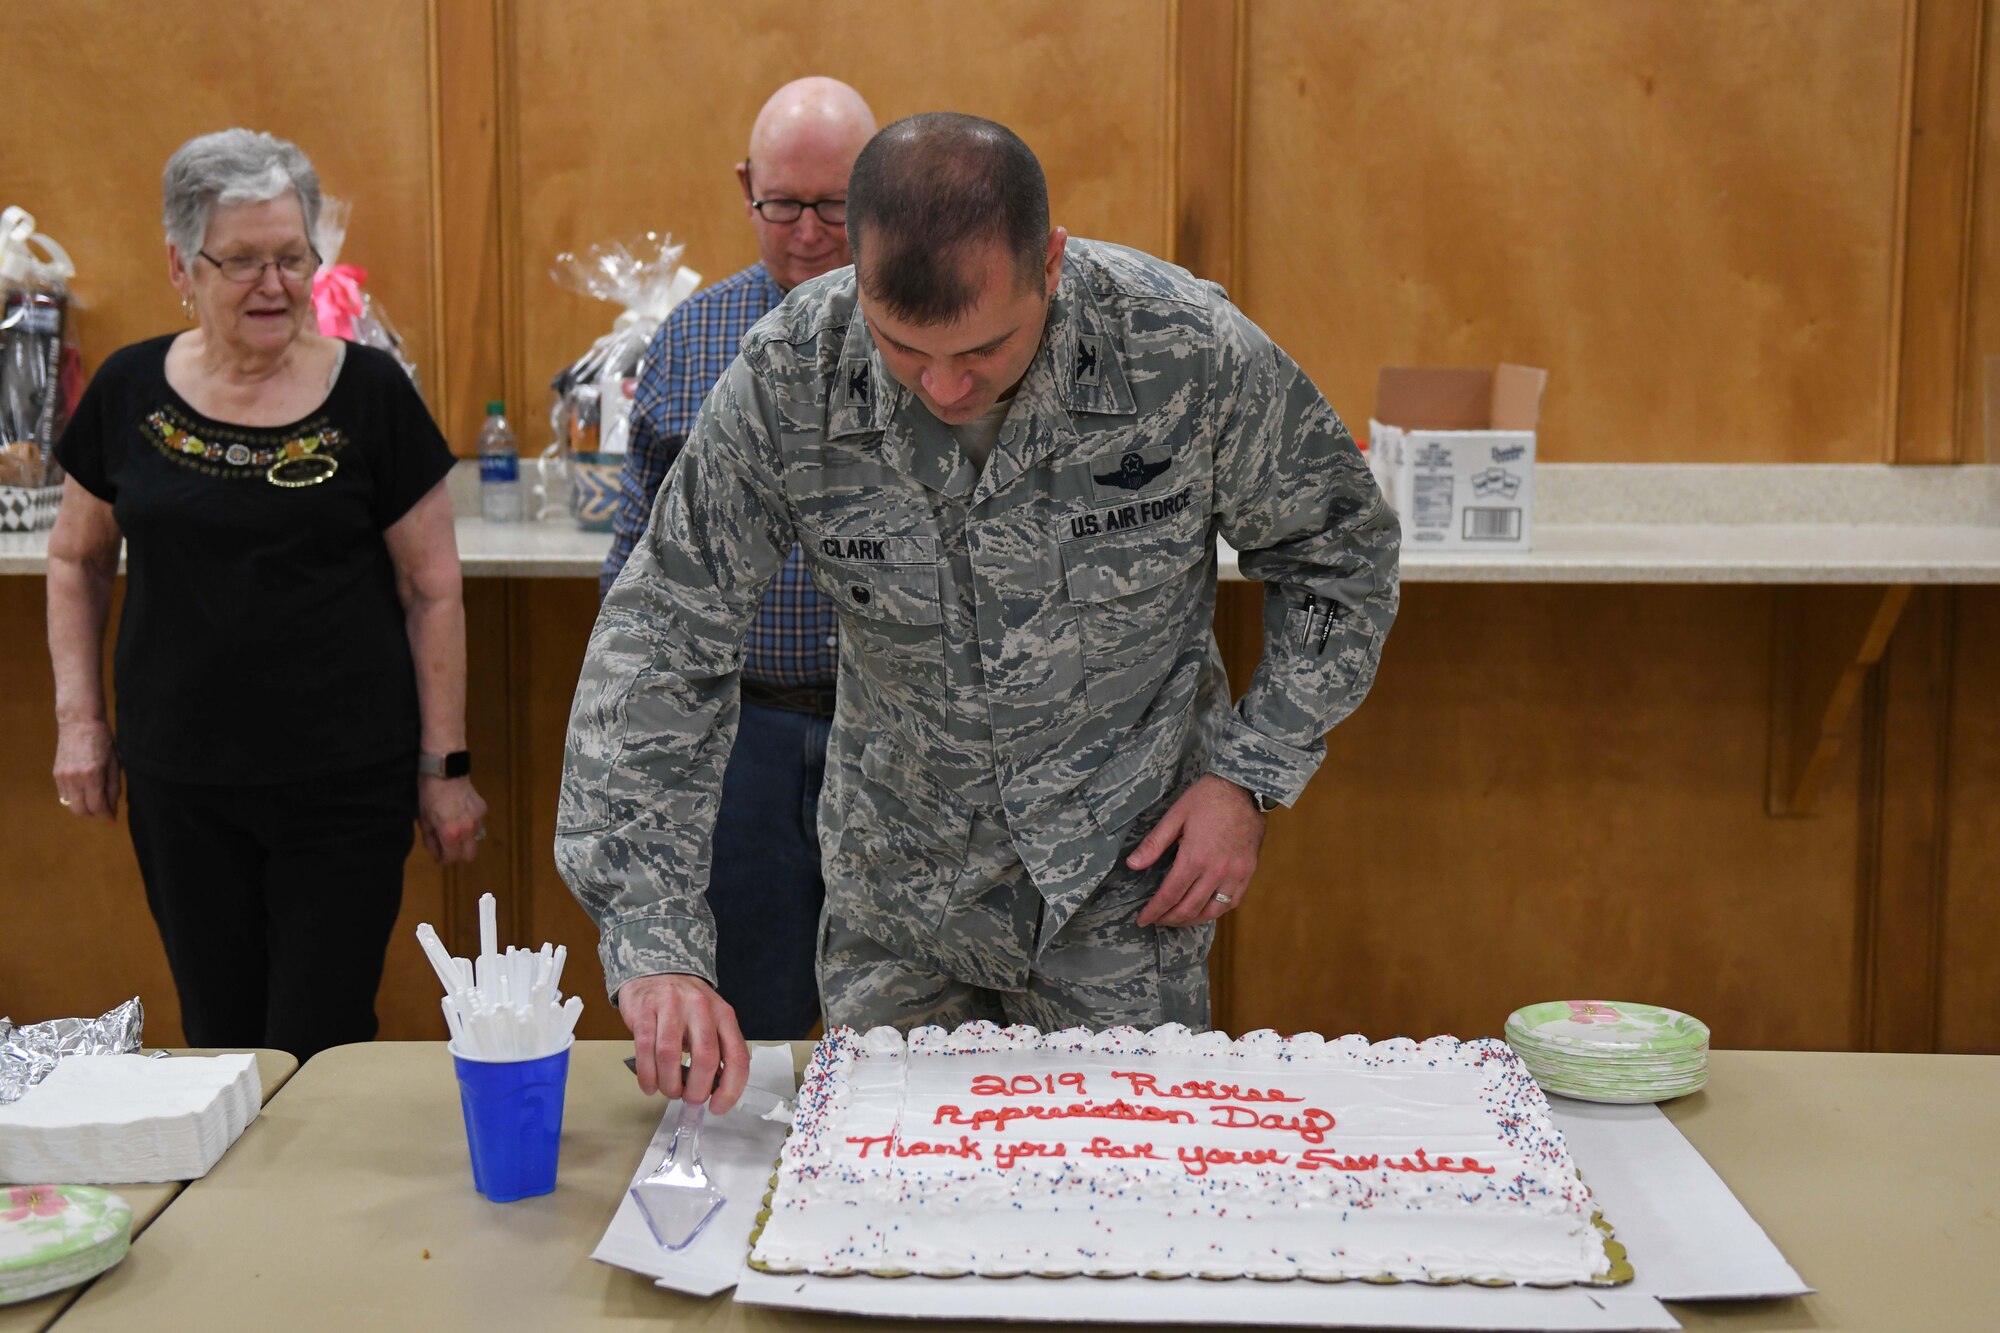 A man in uniform cuts a cake